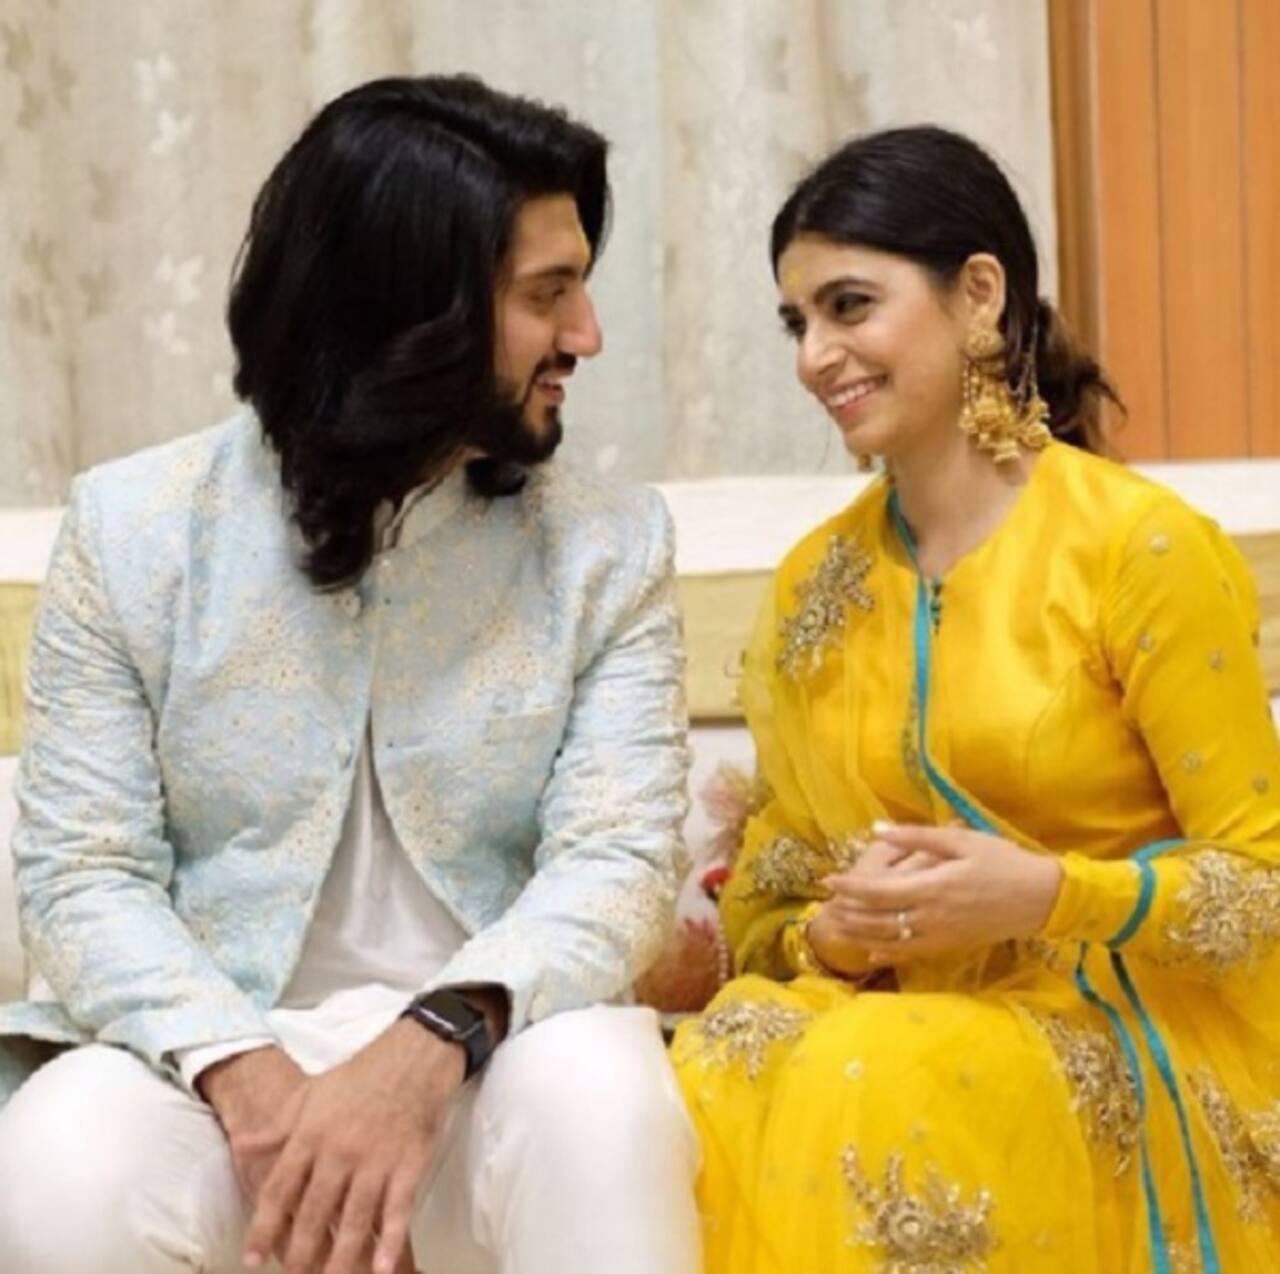 Whoa! Ishqbaaz's Kunal Jaisingh gets engaged to girlfriend Bharati Kumar